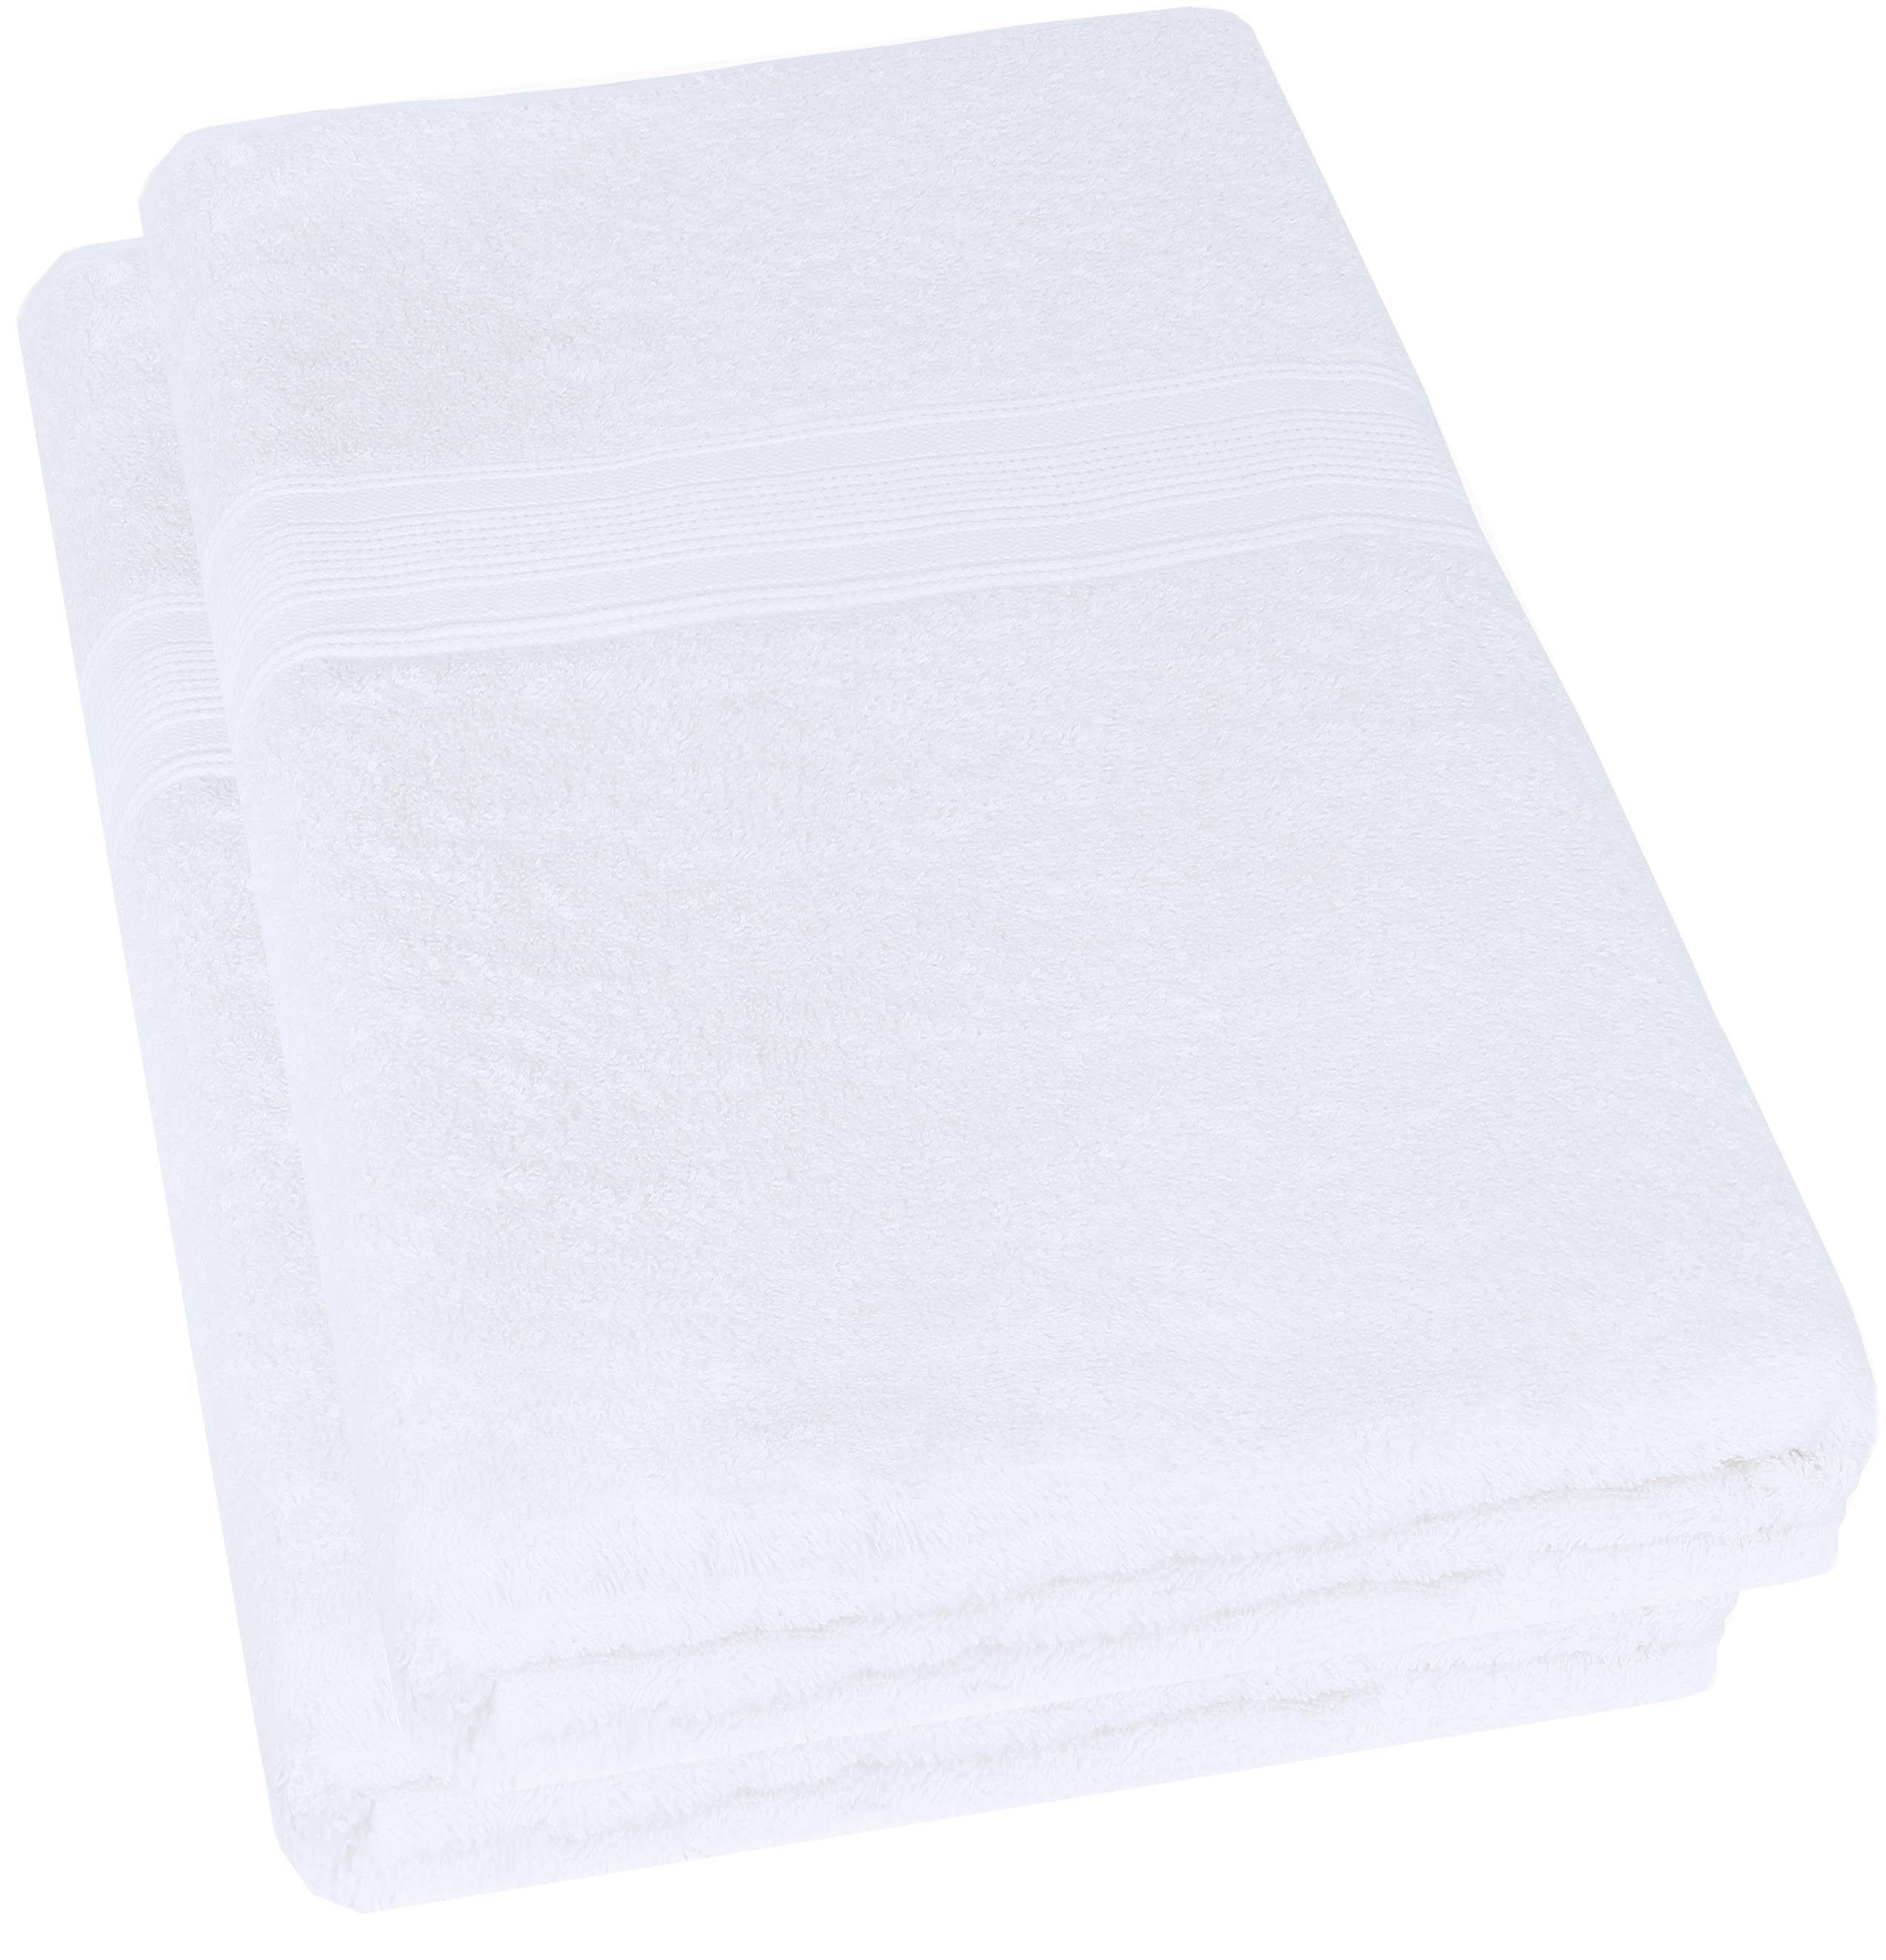 Bade-Handtuch, BADETUCH, 500gsm, Badetuch Baumwolle Qualität, (2-St), NatureMark 100x150cm, Weiß 100% Premium Badetuch